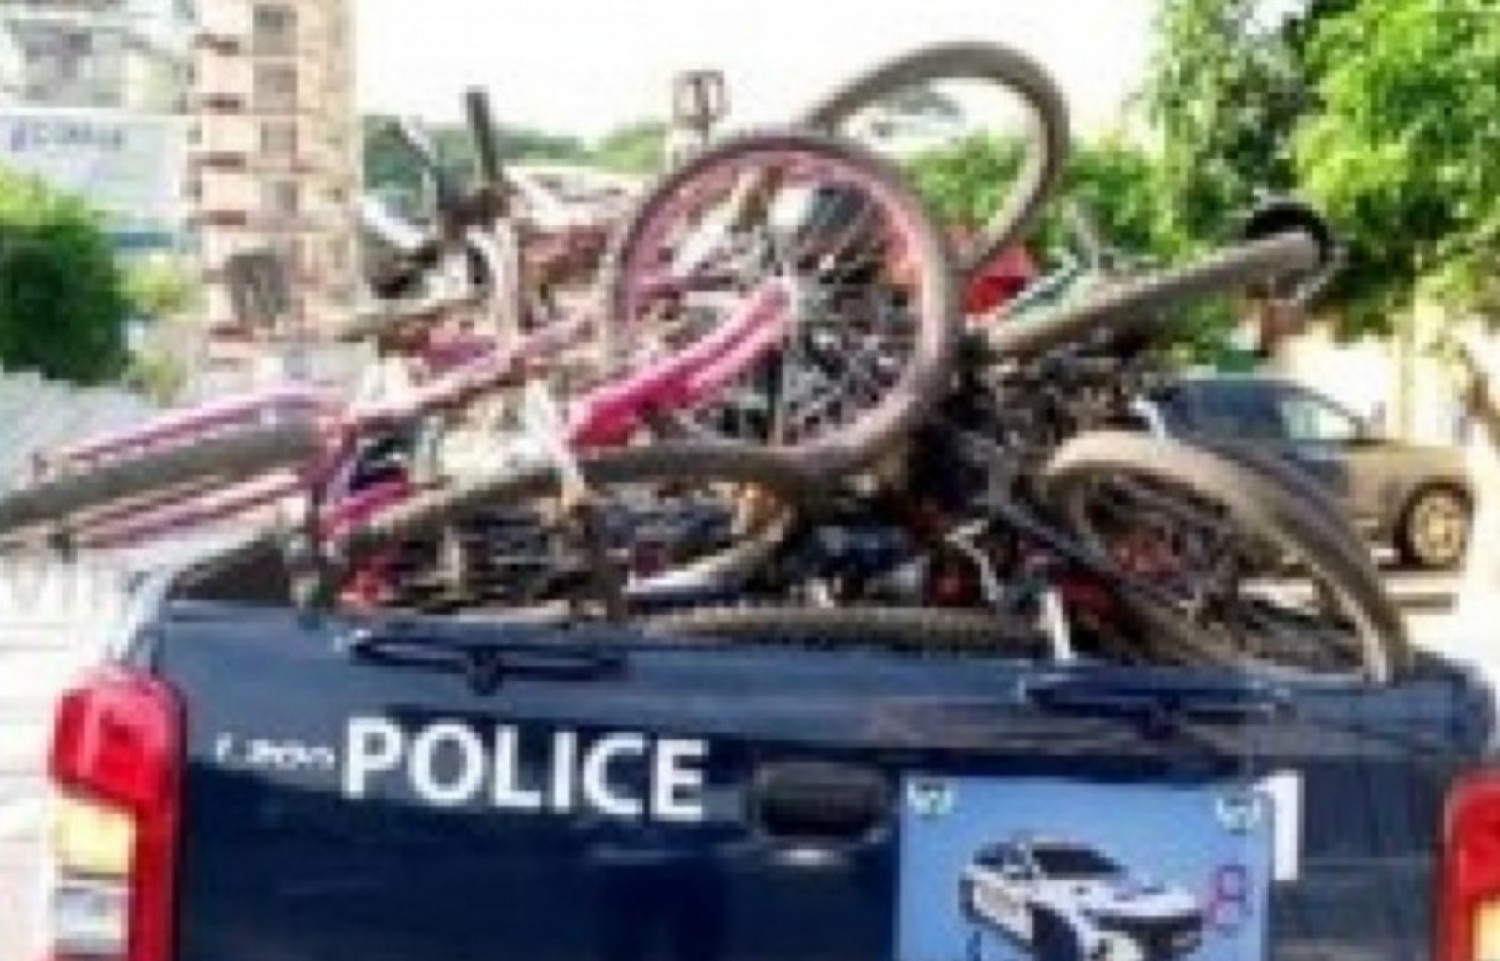 Côte d'Ivoire : Mesures de sécurisation du 5è pont, saisie de plusieurs vélos par la Police pour actes dangereux